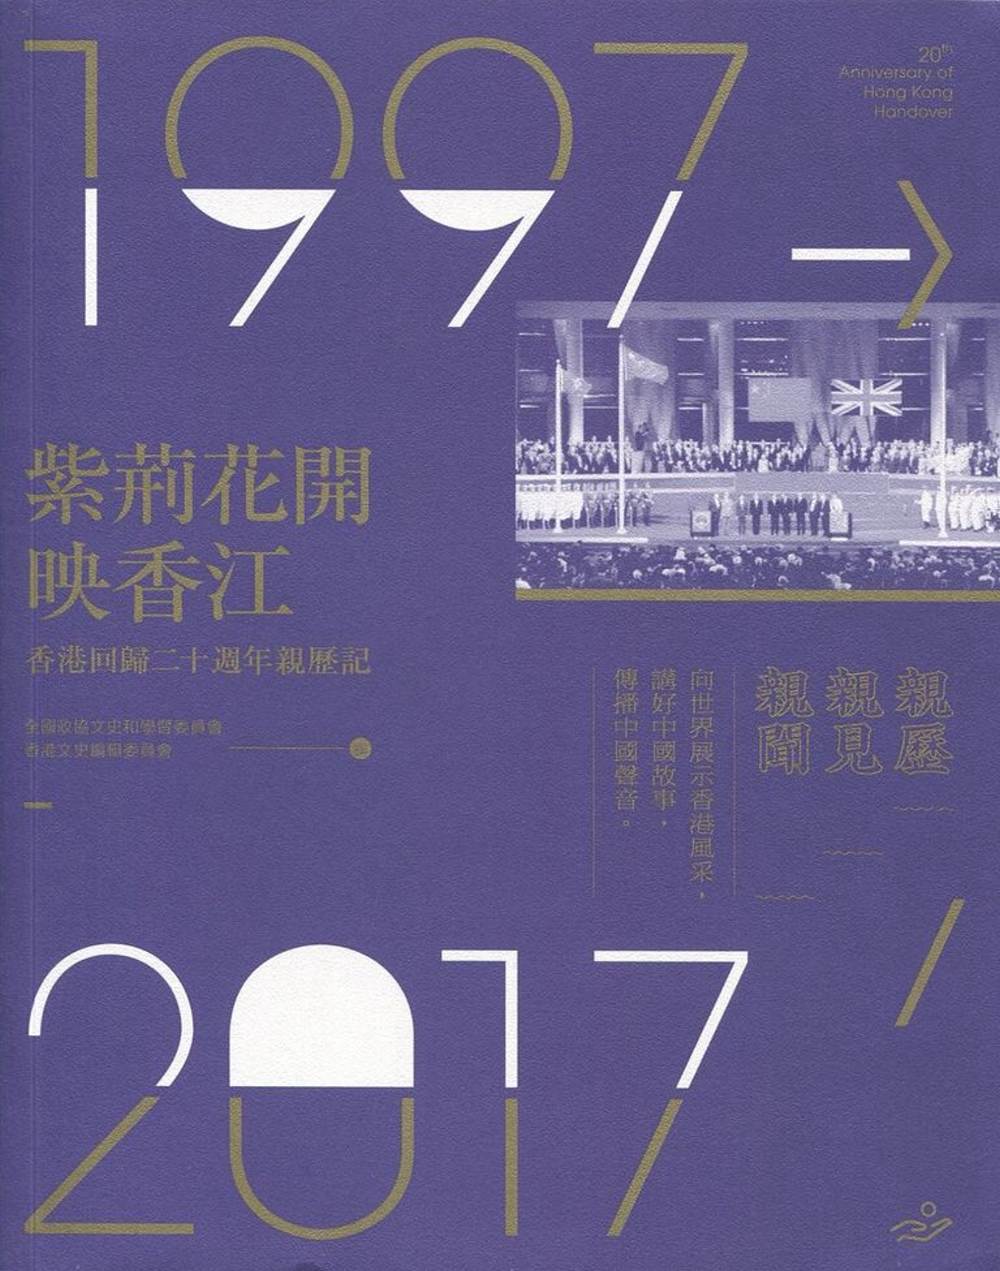 紫荊花開映香江：香港回歸二十週年親歷記